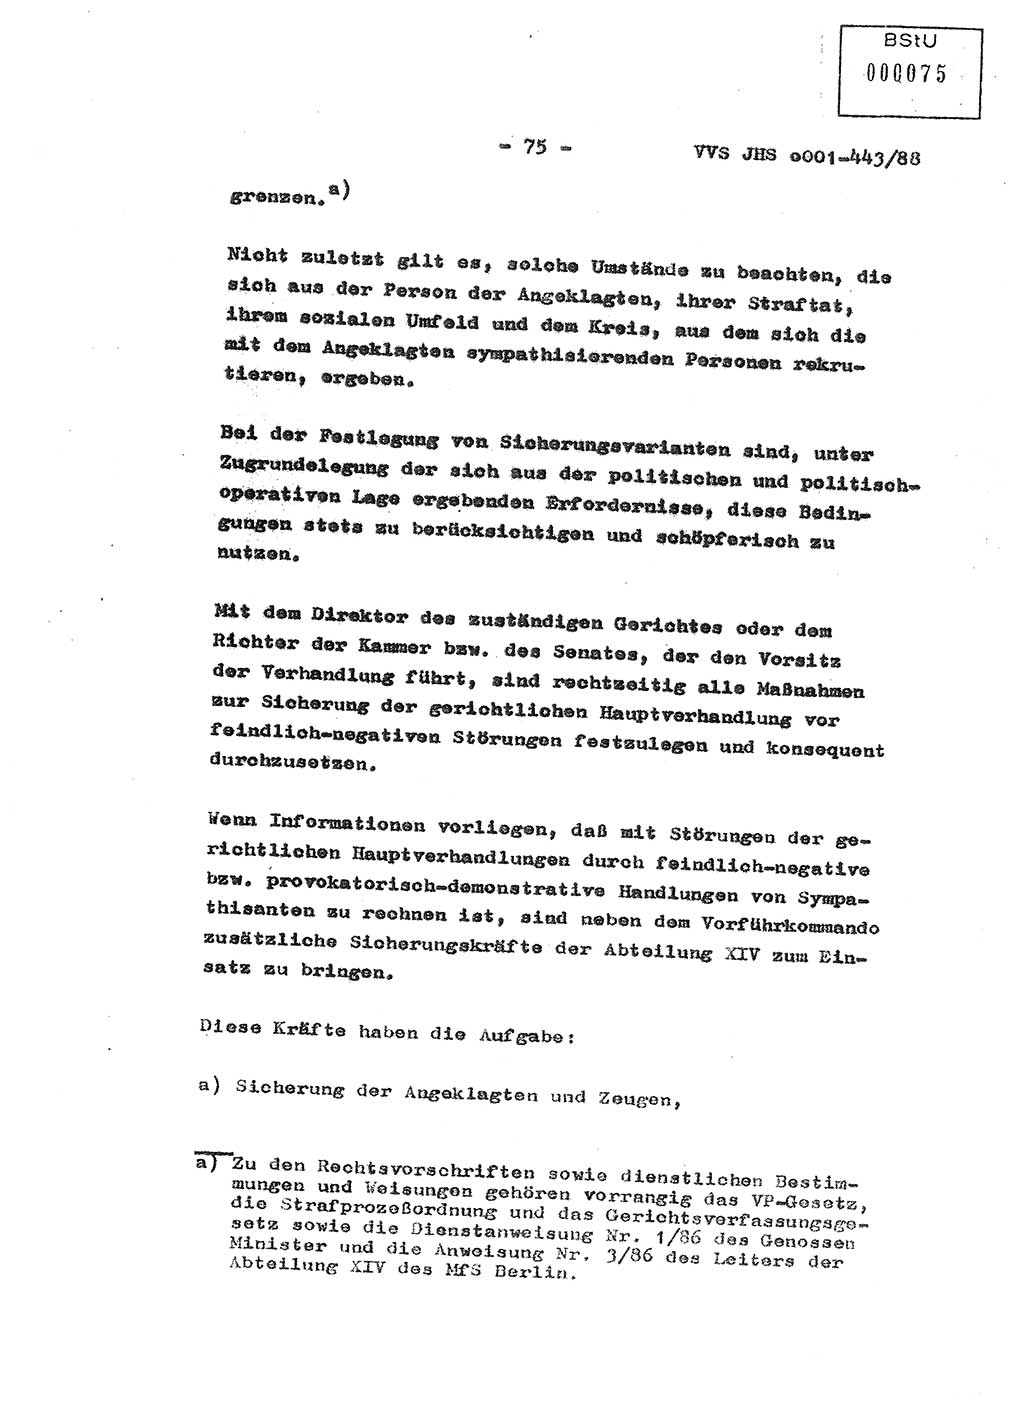 Diplomarbeit Hauptmann Michael Rast (Abt. ⅩⅣ), Major Bernd Rahaus (Abt. ⅩⅣ), Ministerium für Staatssicherheit (MfS) [Deutsche Demokratische Republik (DDR)], Juristische Hochschule (JHS), Vertrauliche Verschlußsache (VVS) o001-443/88, Potsdam 1988, Seite 75 (Dipl.-Arb. MfS DDR JHS VVS o001-443/88 1988, S. 75)